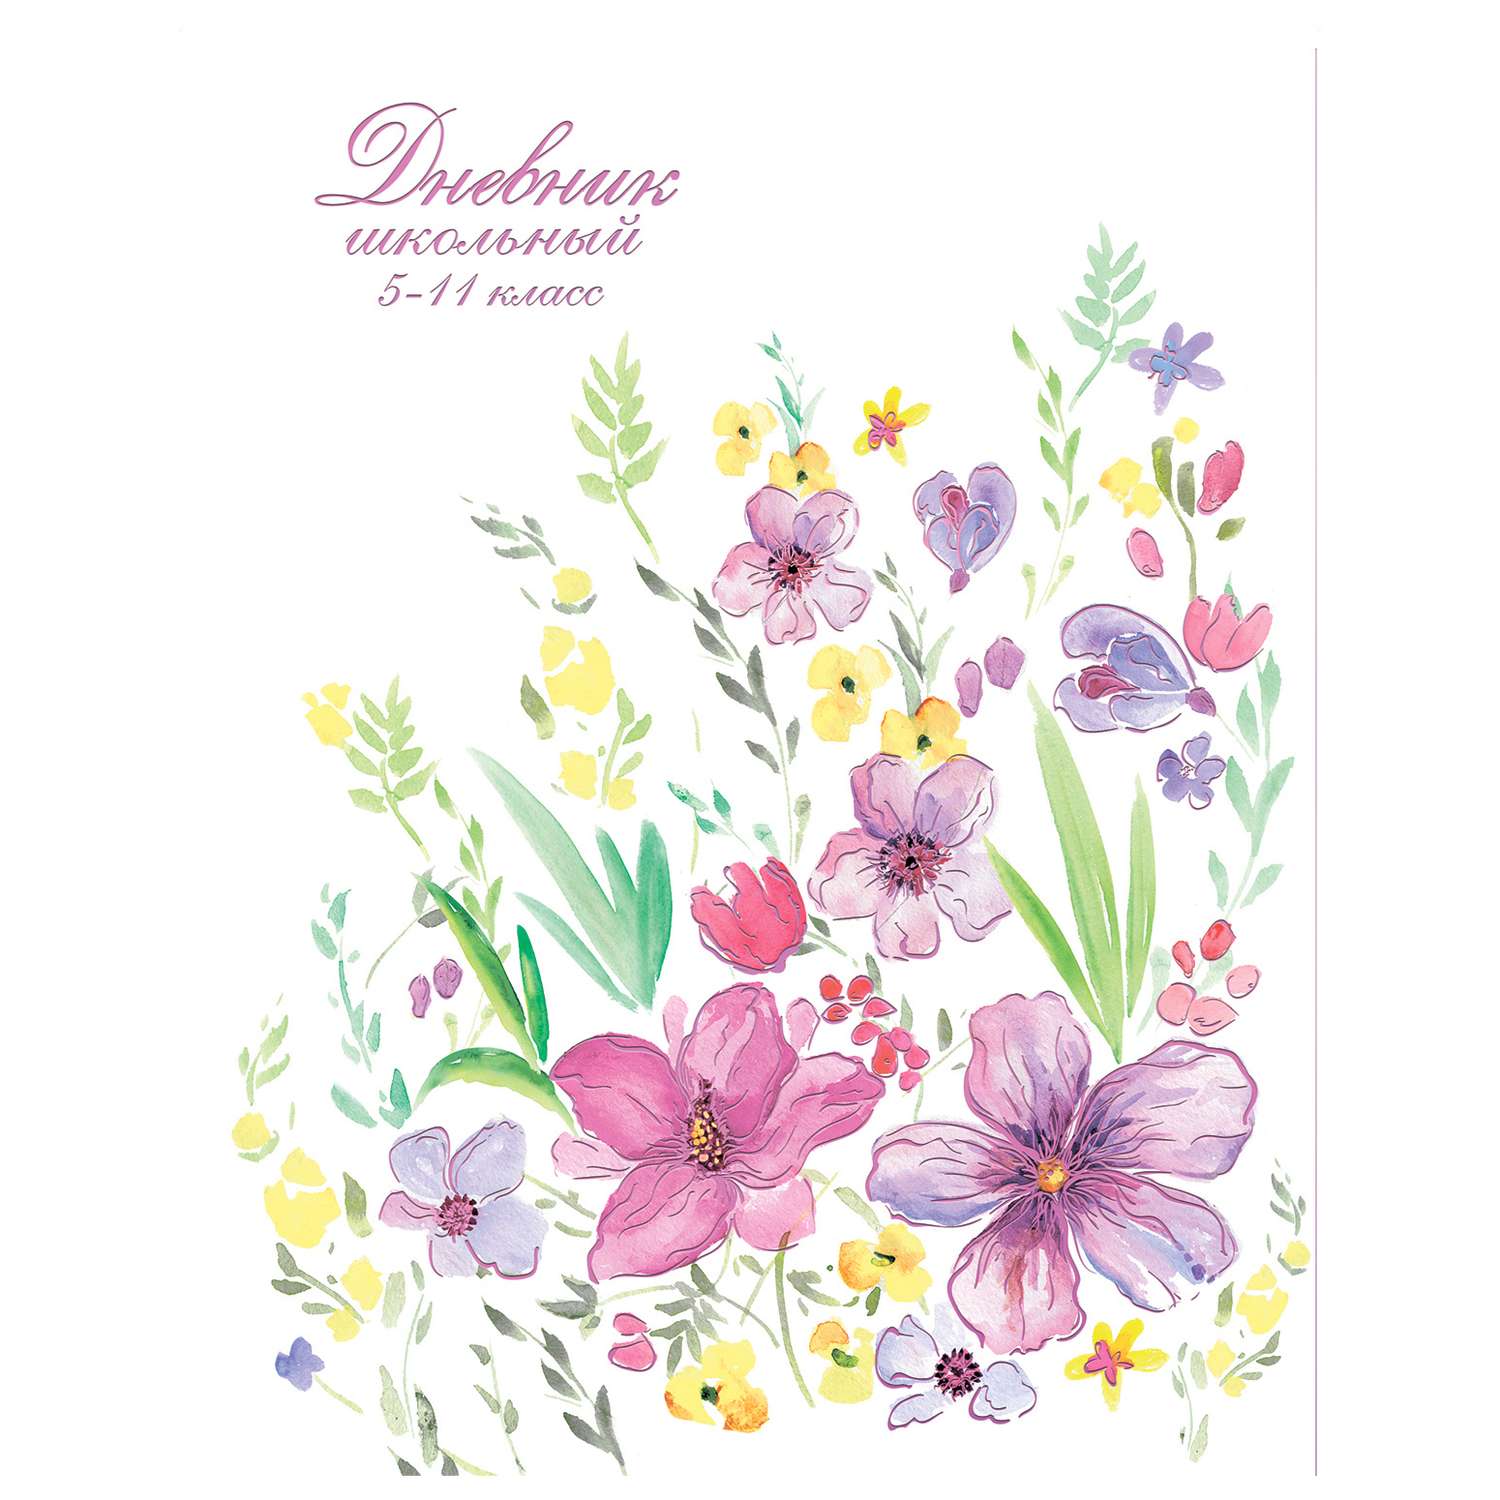 Дневник Феникс + Весенние Цветы 5-11 класс - фото 1